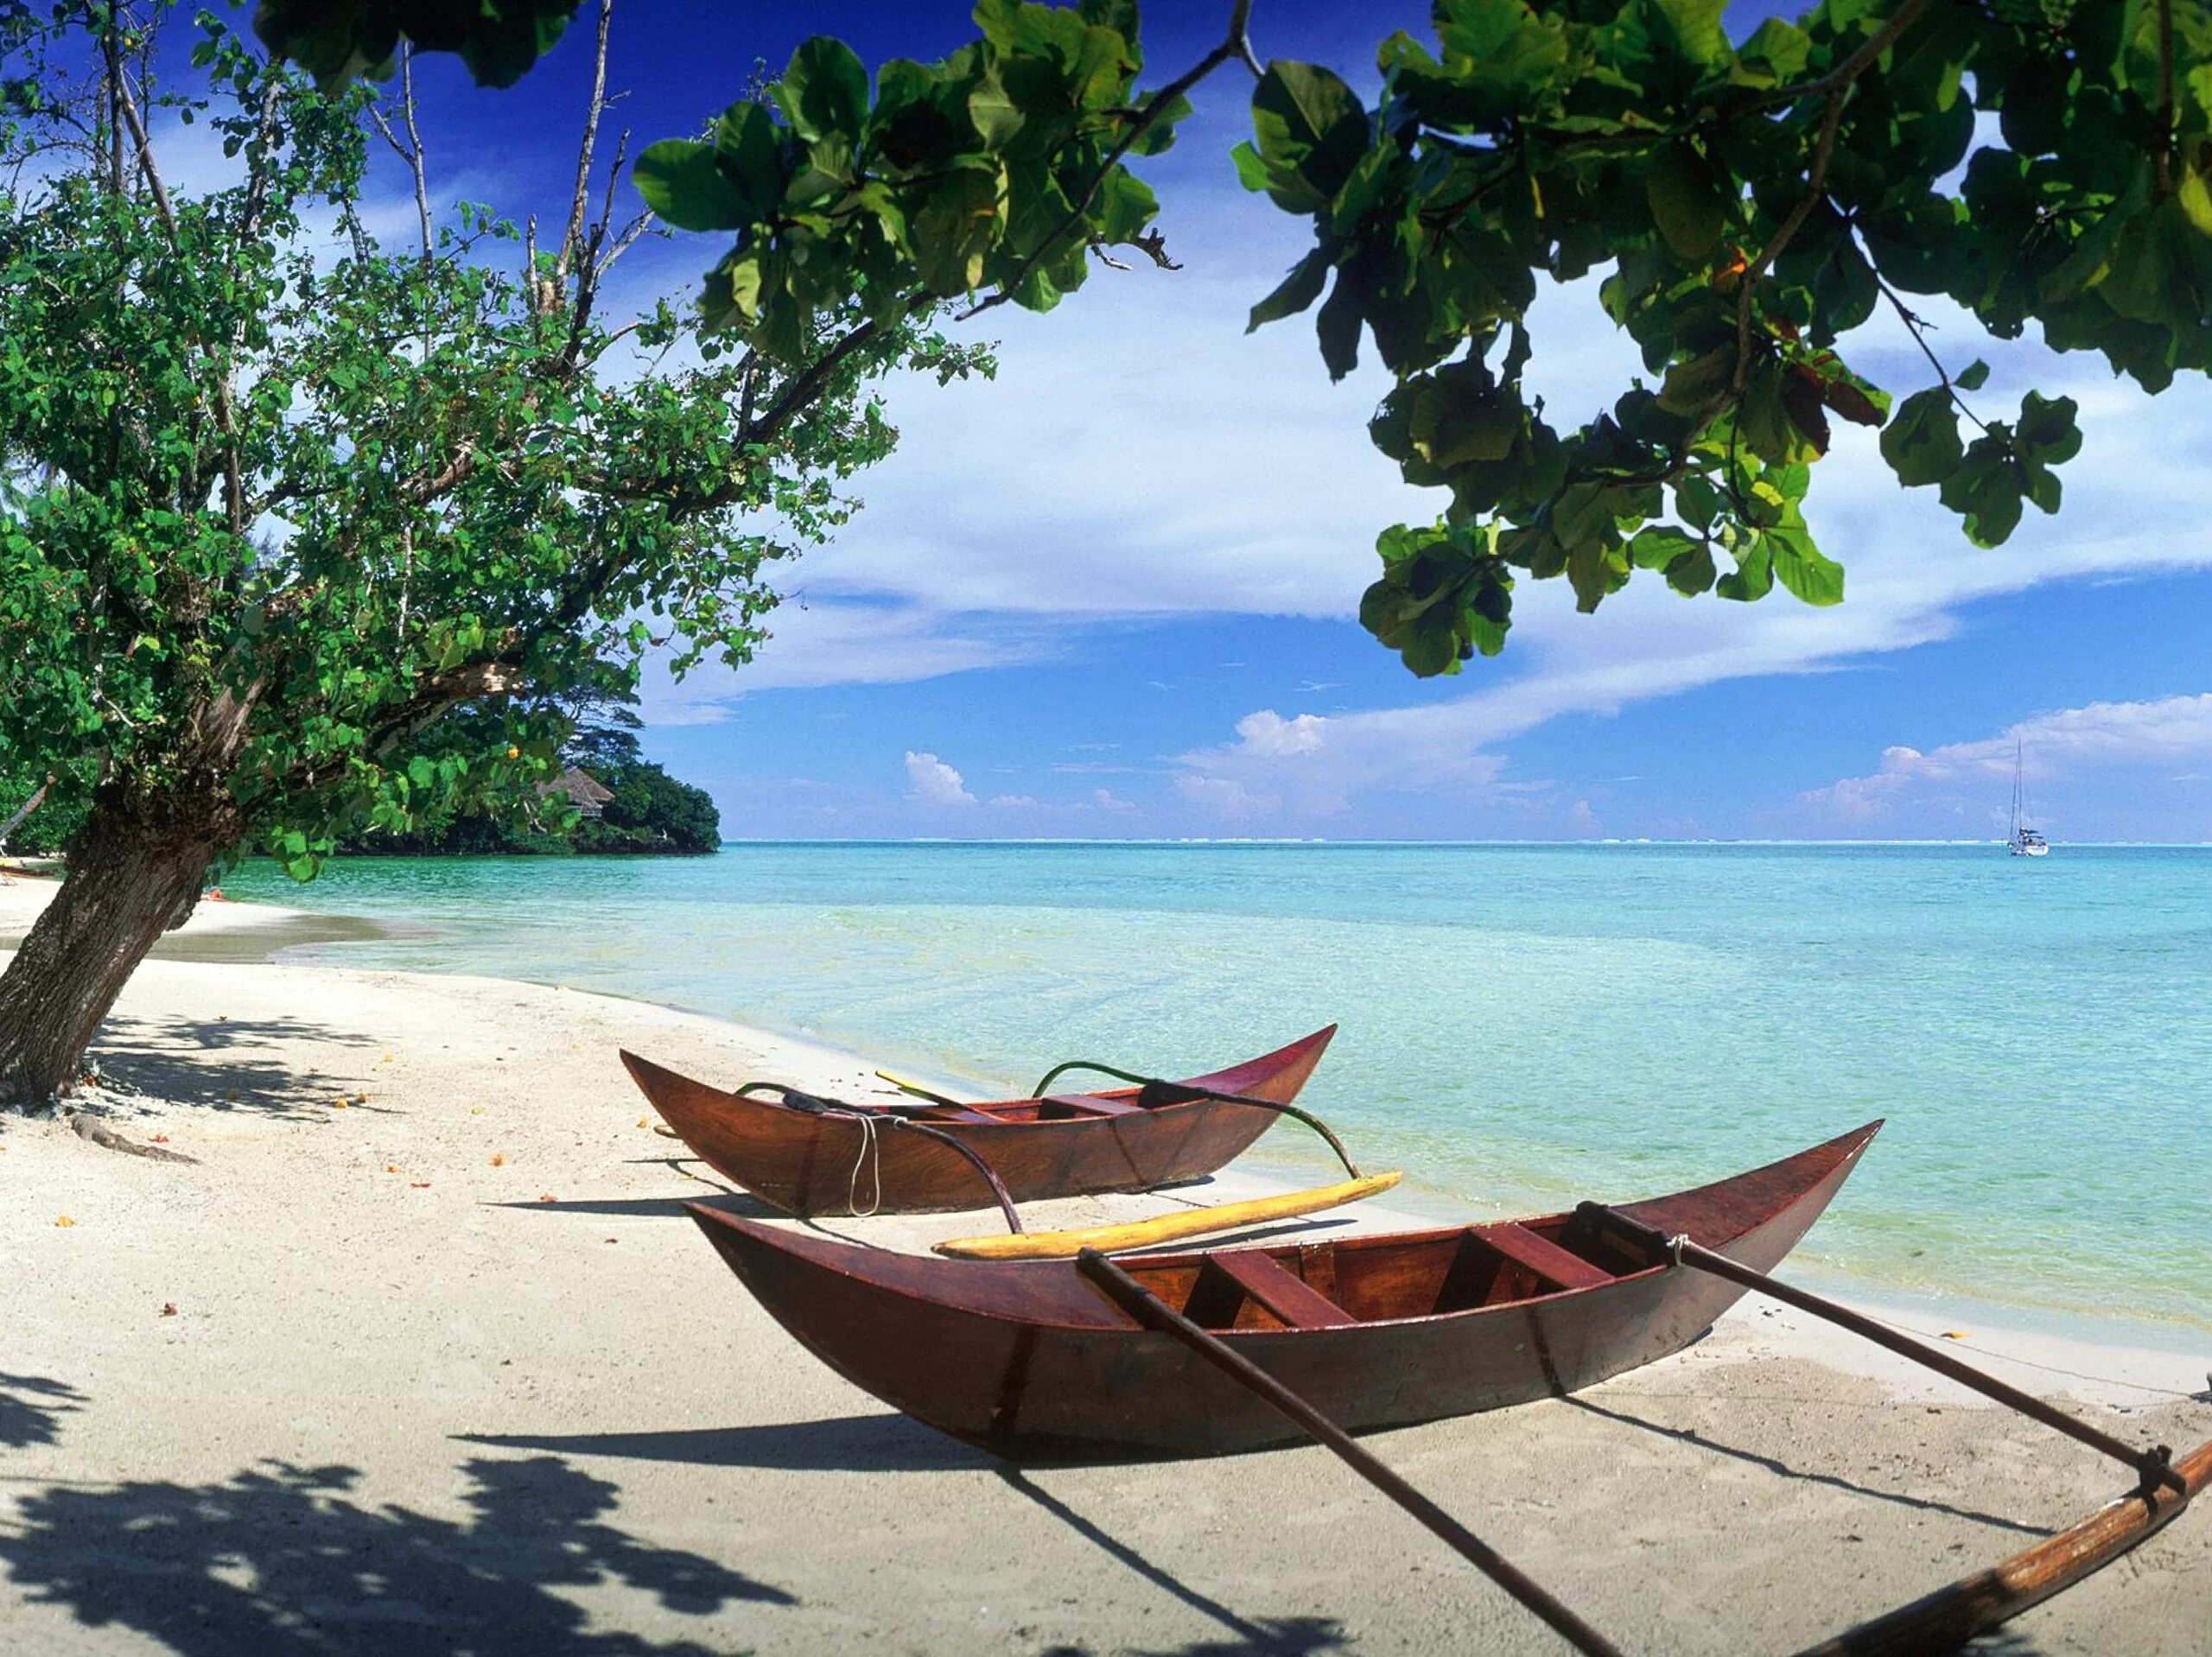 Boat island. Каноэ Тайланд. Бали (остров в малайском архипелаге). Лодка на берегу. Лодка в море.